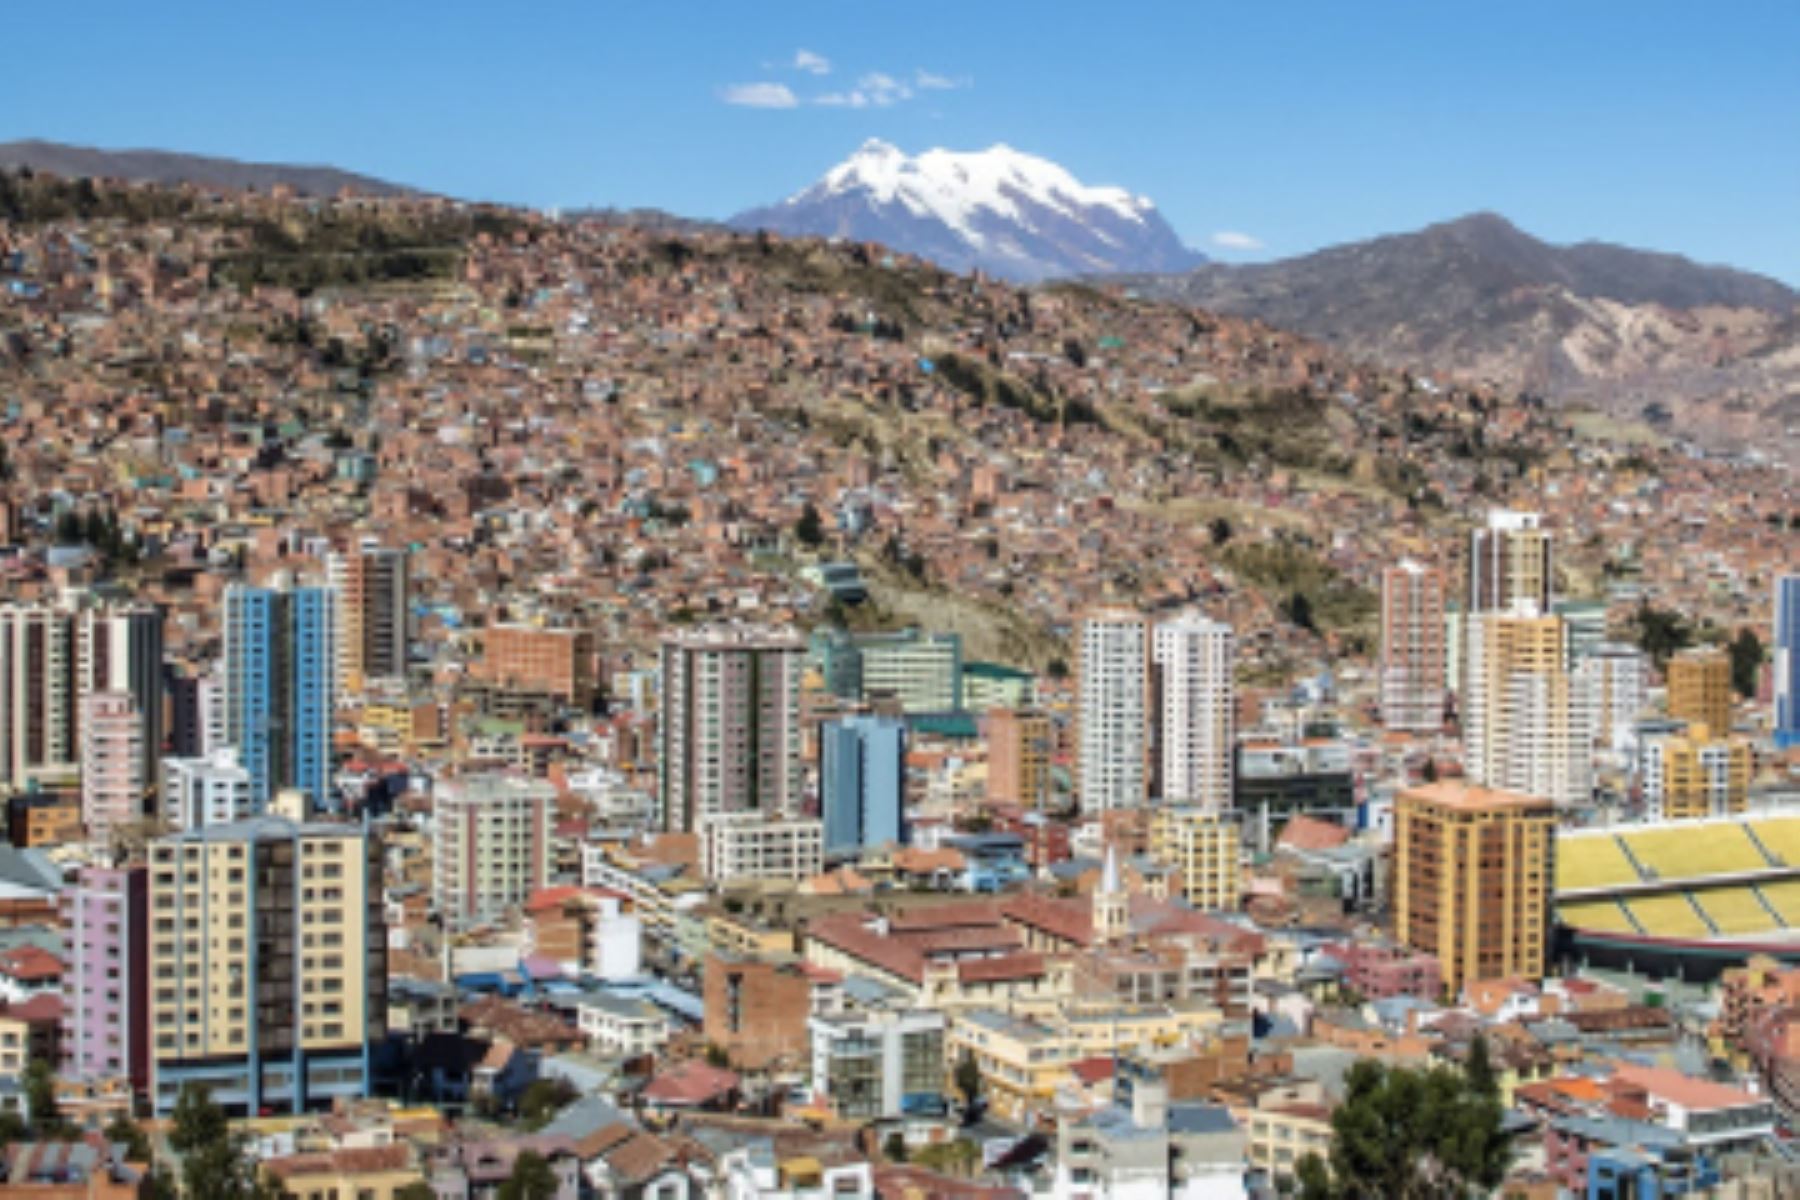 Panorámica de la ciudad de La Paz, capital de Bolivia. Foto: Internet